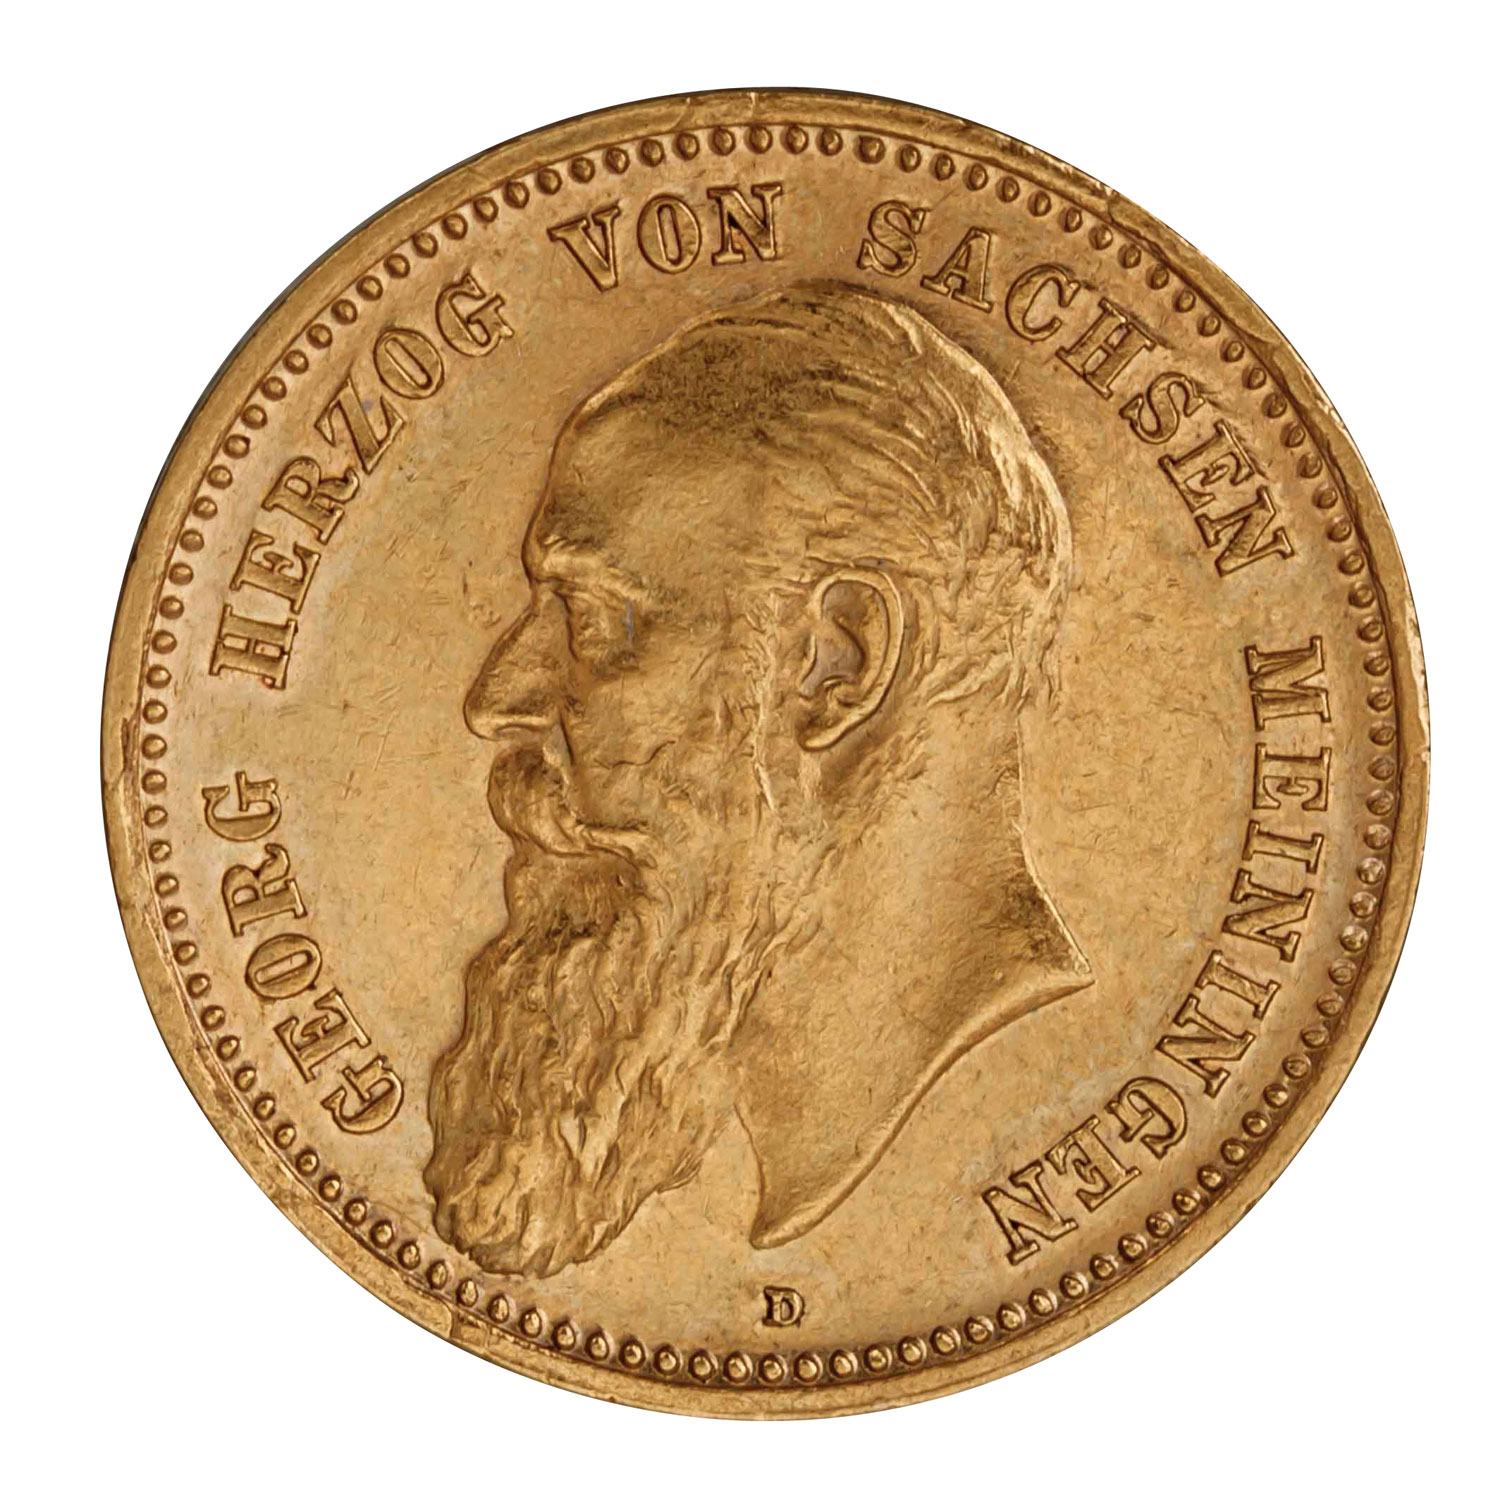 Herzogtum Sachsen-Meiningen/Gold - 10 Mark 1898/D, Herzog Georg II. (1866-1914), - Image 2 of 3